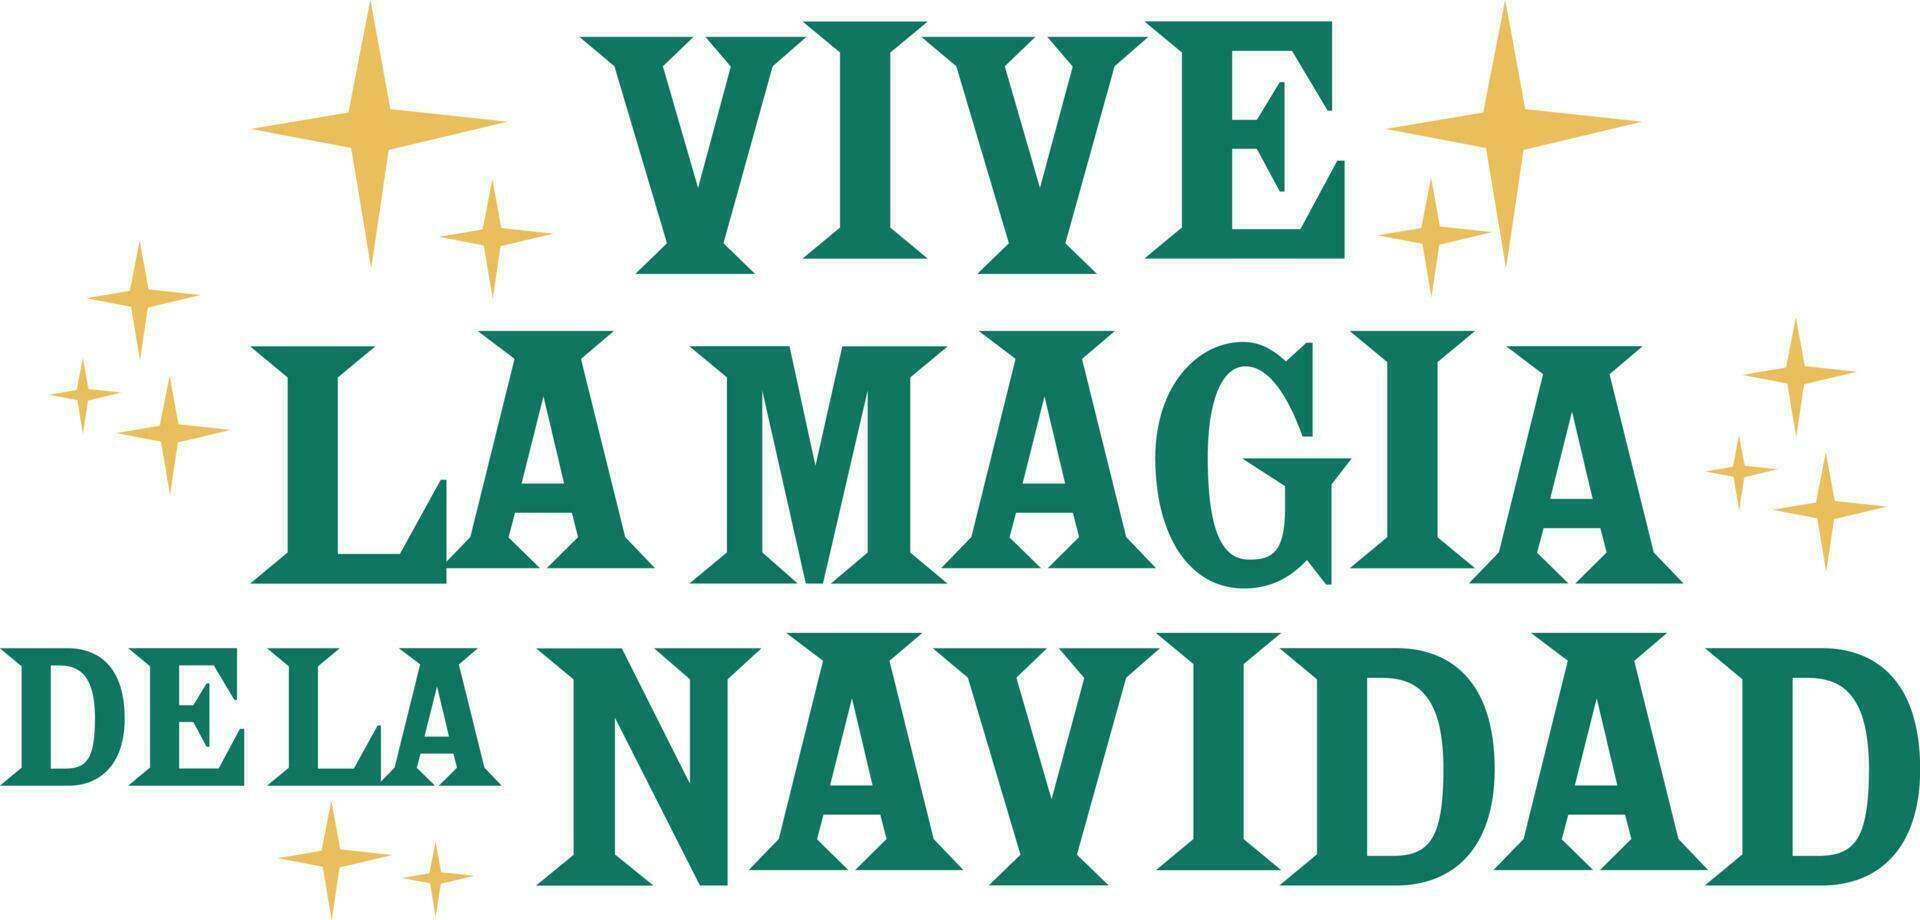 Viva la mancia, andalusia, Spagna. mano scritta. calligrafico design. tipografia vettore